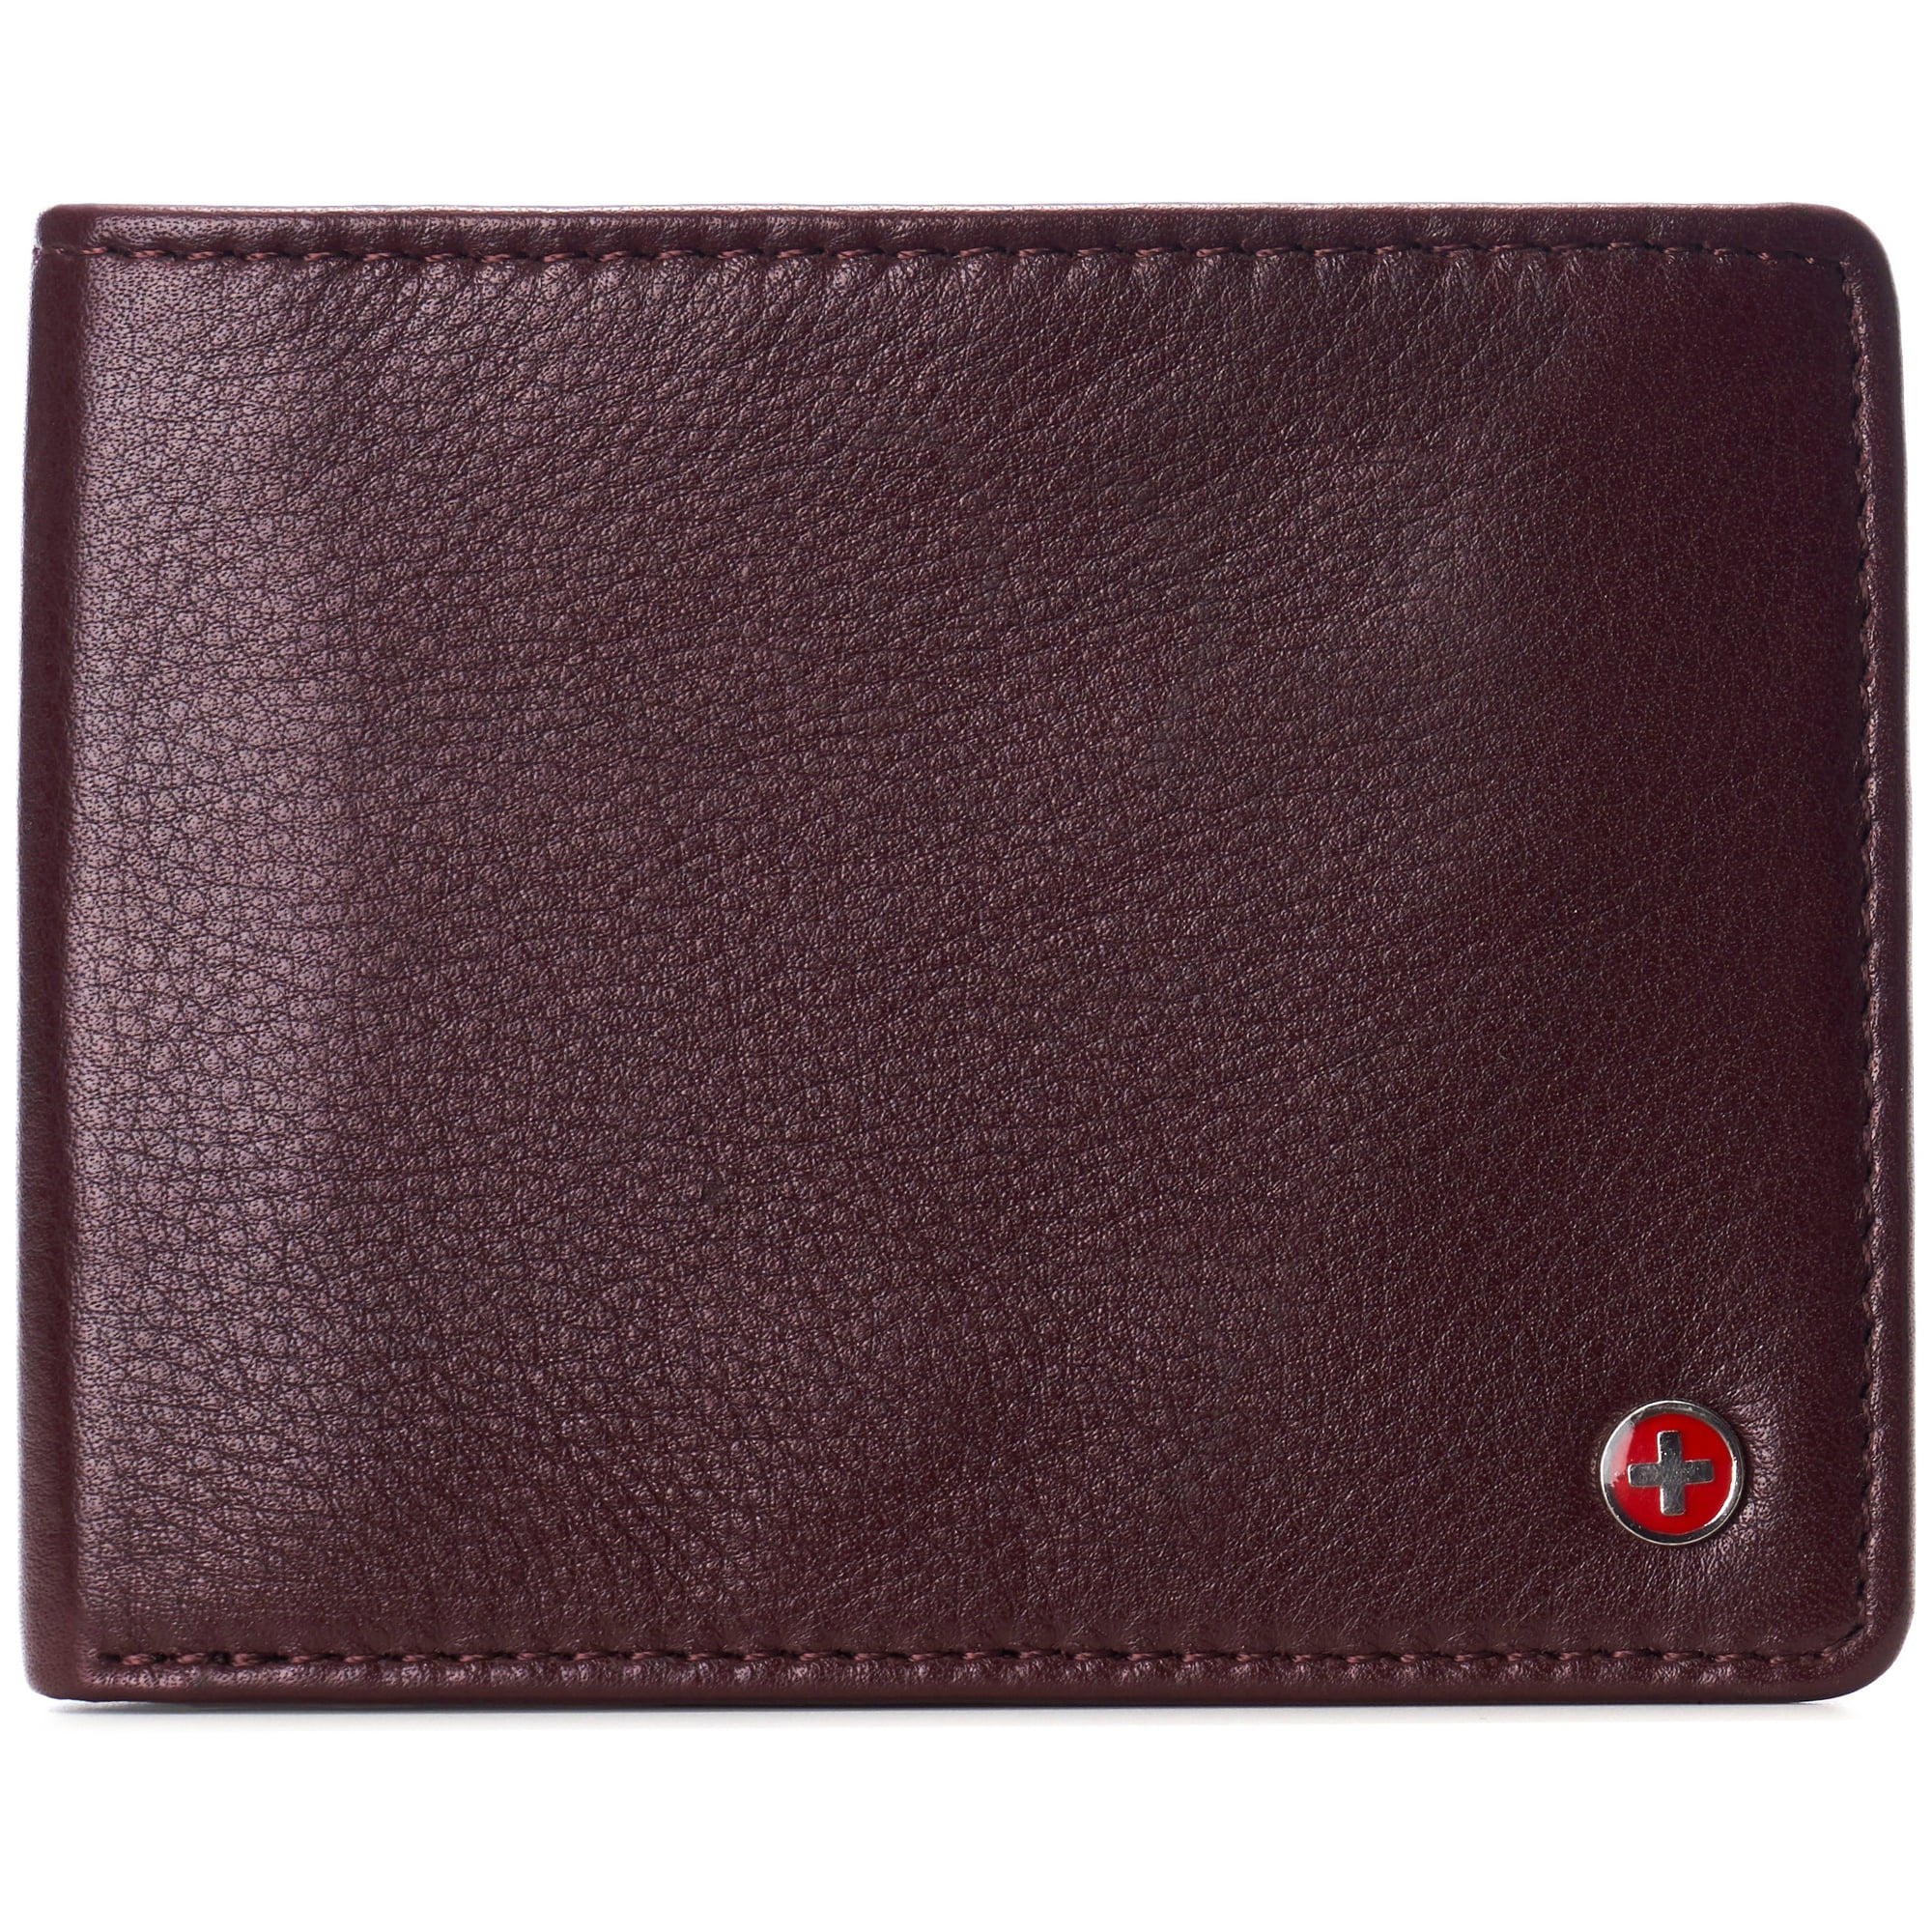 Alpine Swiss Mens Genuine Leather Passcase Bifold Wallet RFID Safe 2 ID ...